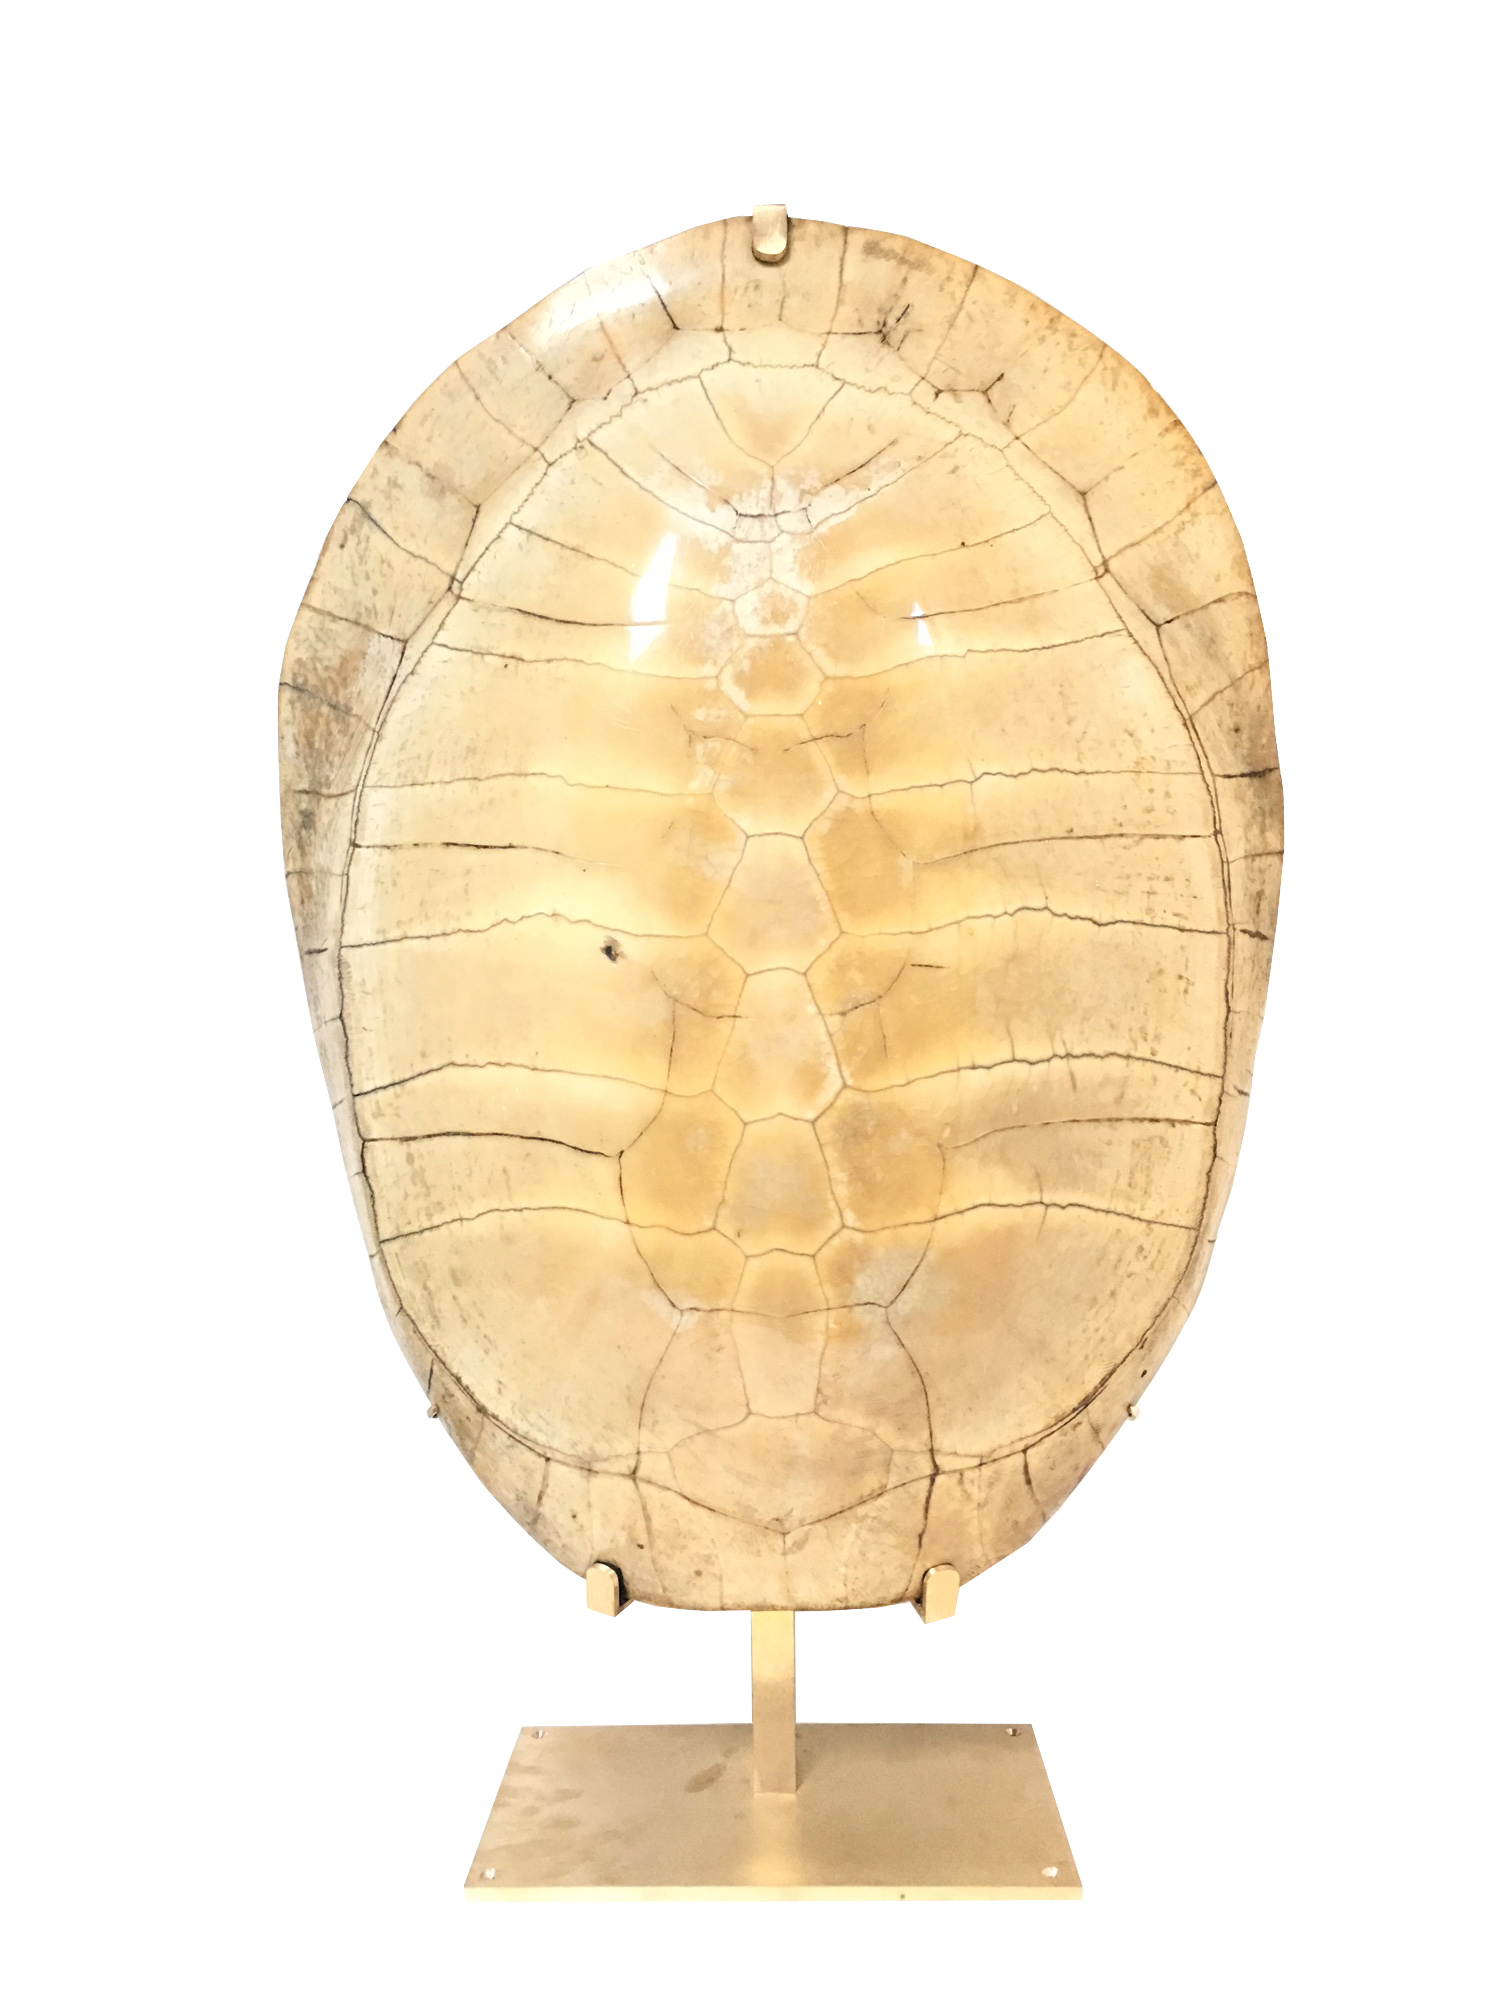 Carapace de tortue soclée sur base en laiton finition dorée sur fond blanc